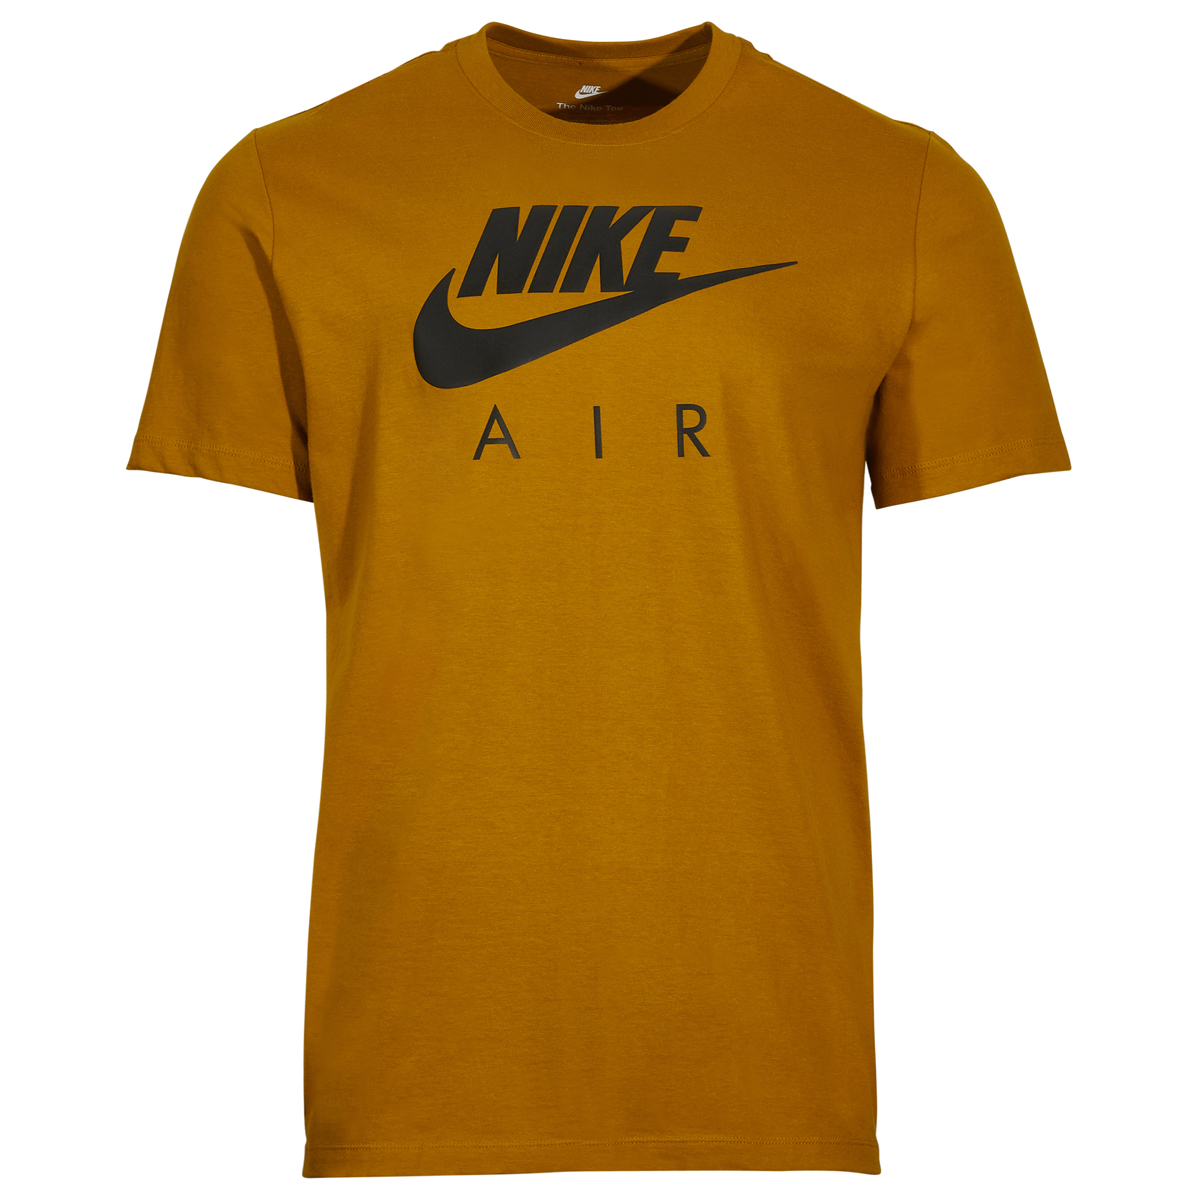 Nike-Air-T-Shirt-Wheat